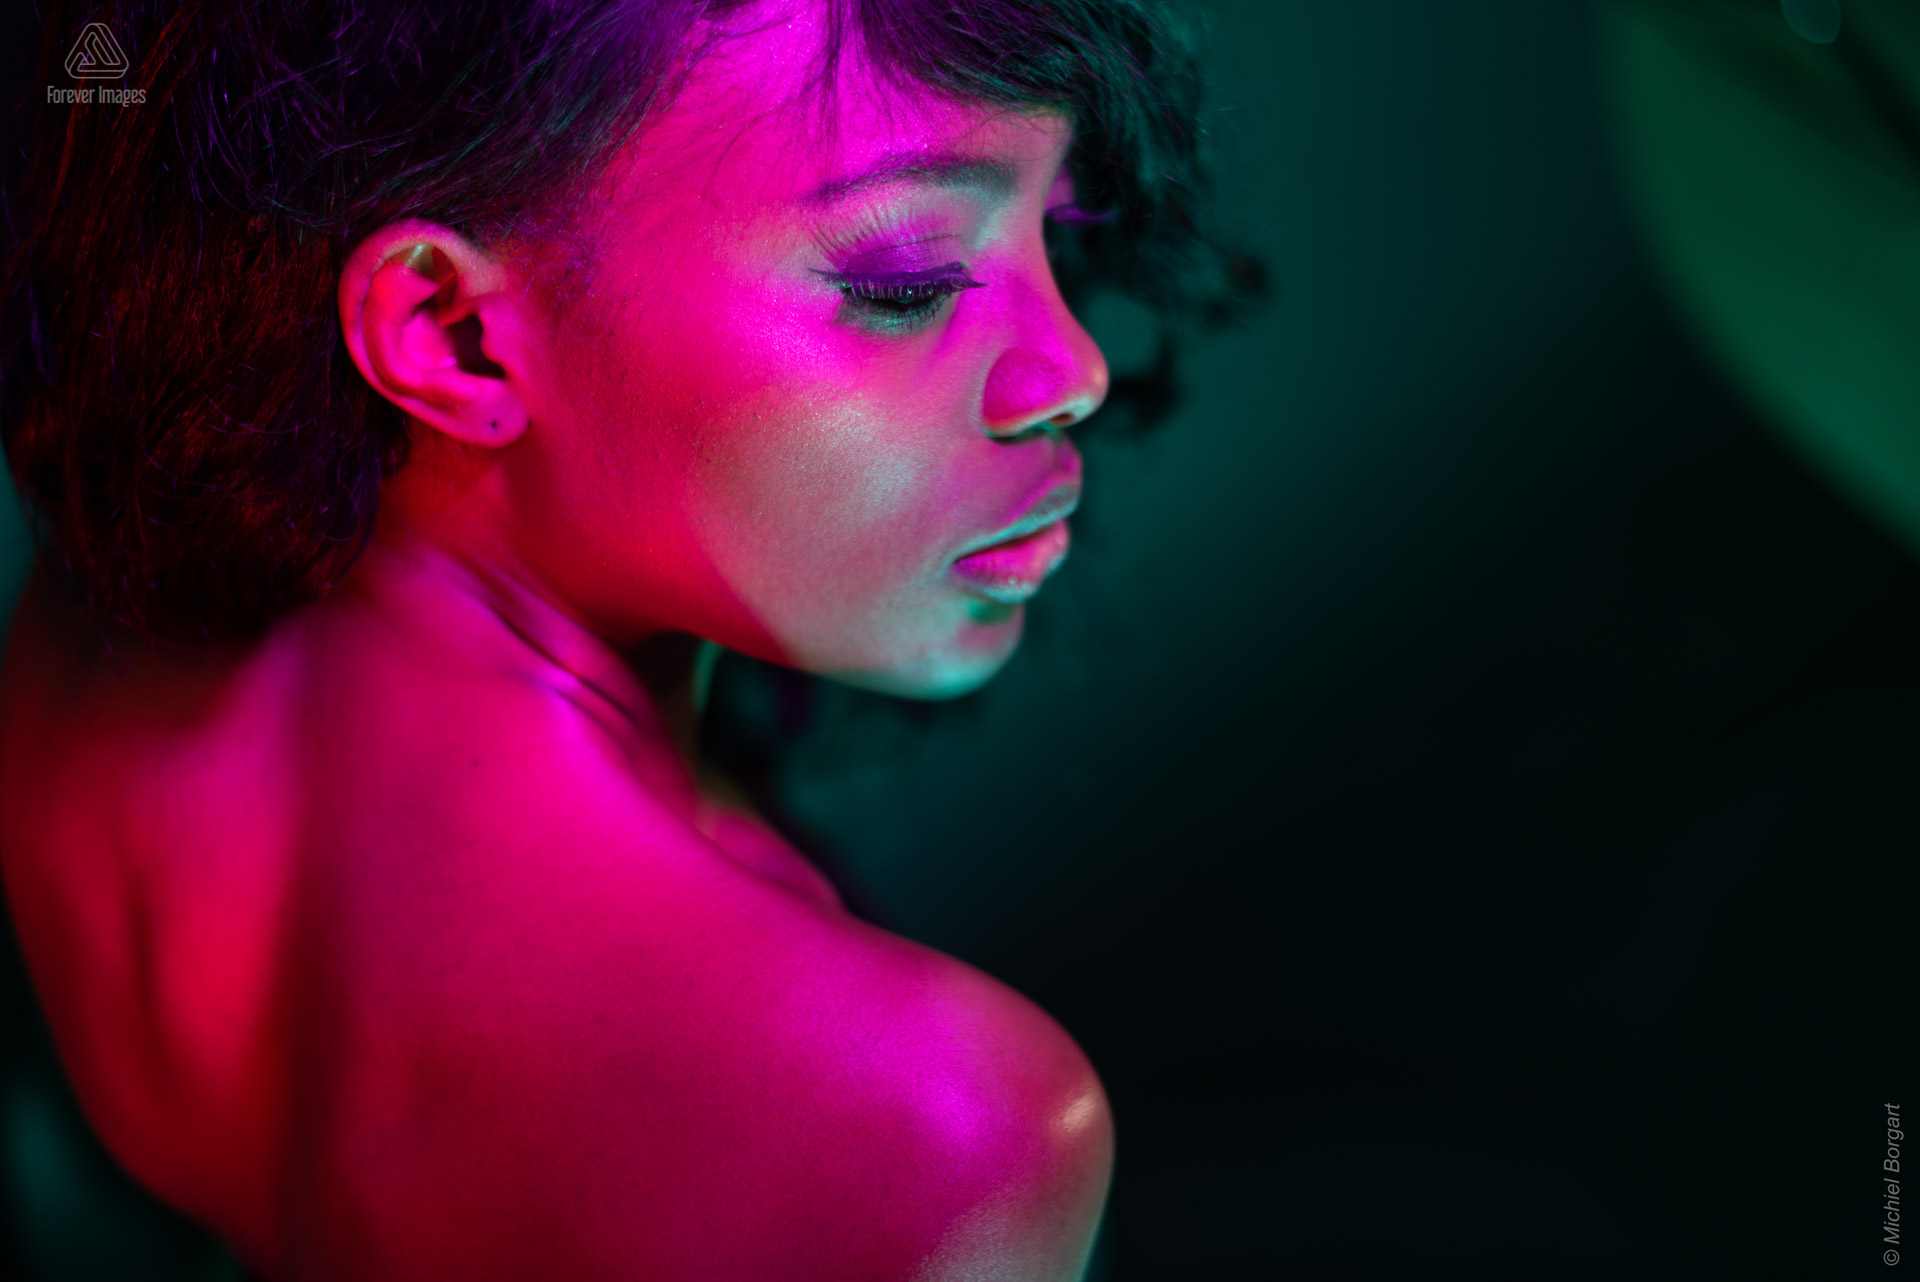 Portretfoto model paars rood groen licht achter over schouder low key | Mariana Pietersz Miss Avantgarde | Portretfotograaf Michiel Borgart - Forever Images.